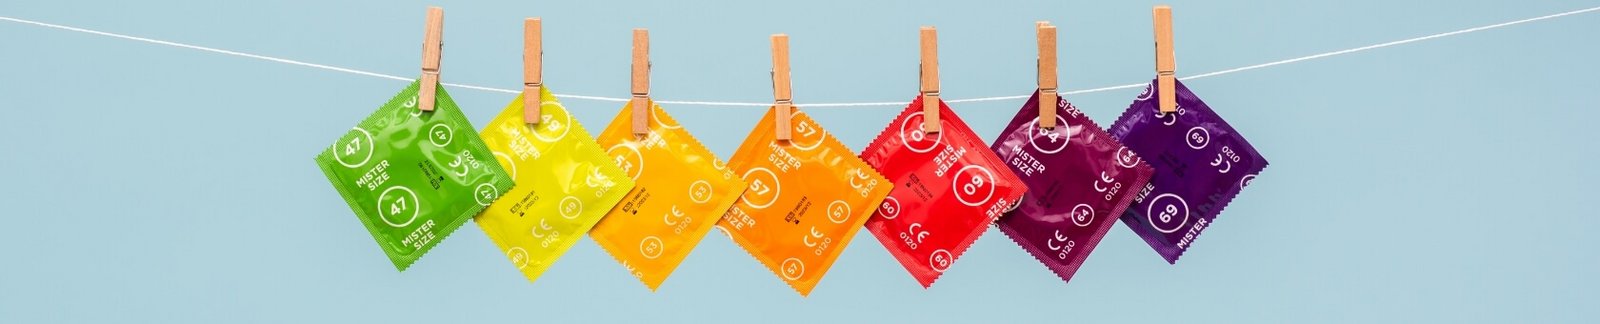 7 Mister Size kondomer på klessnoren